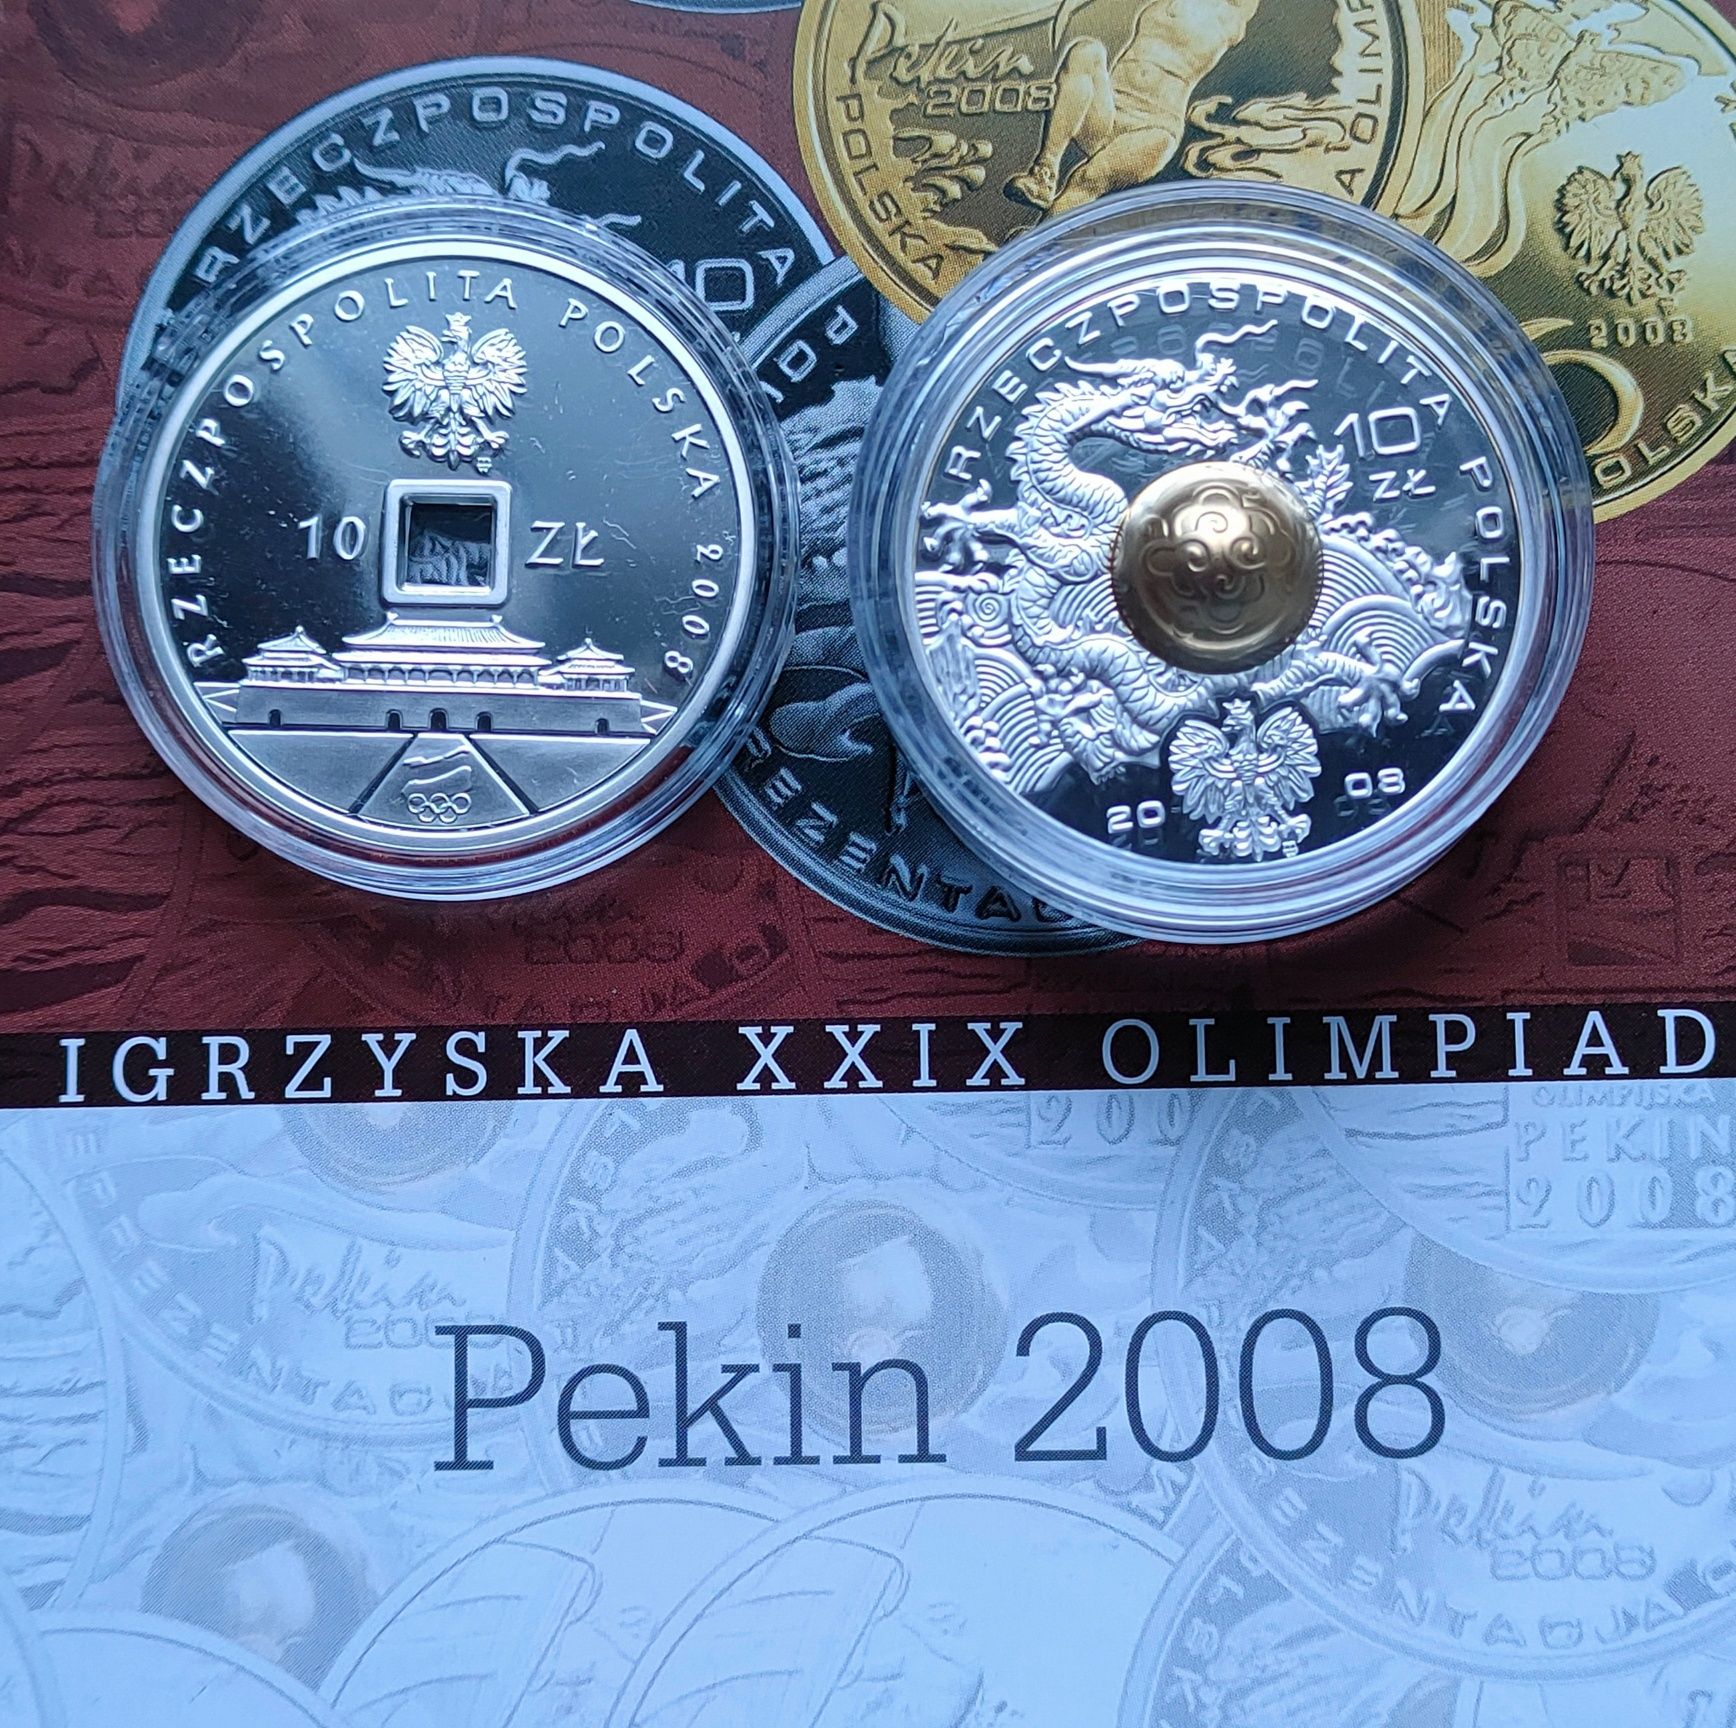 10 zł srebro Pekin 2008 r. 2 monety